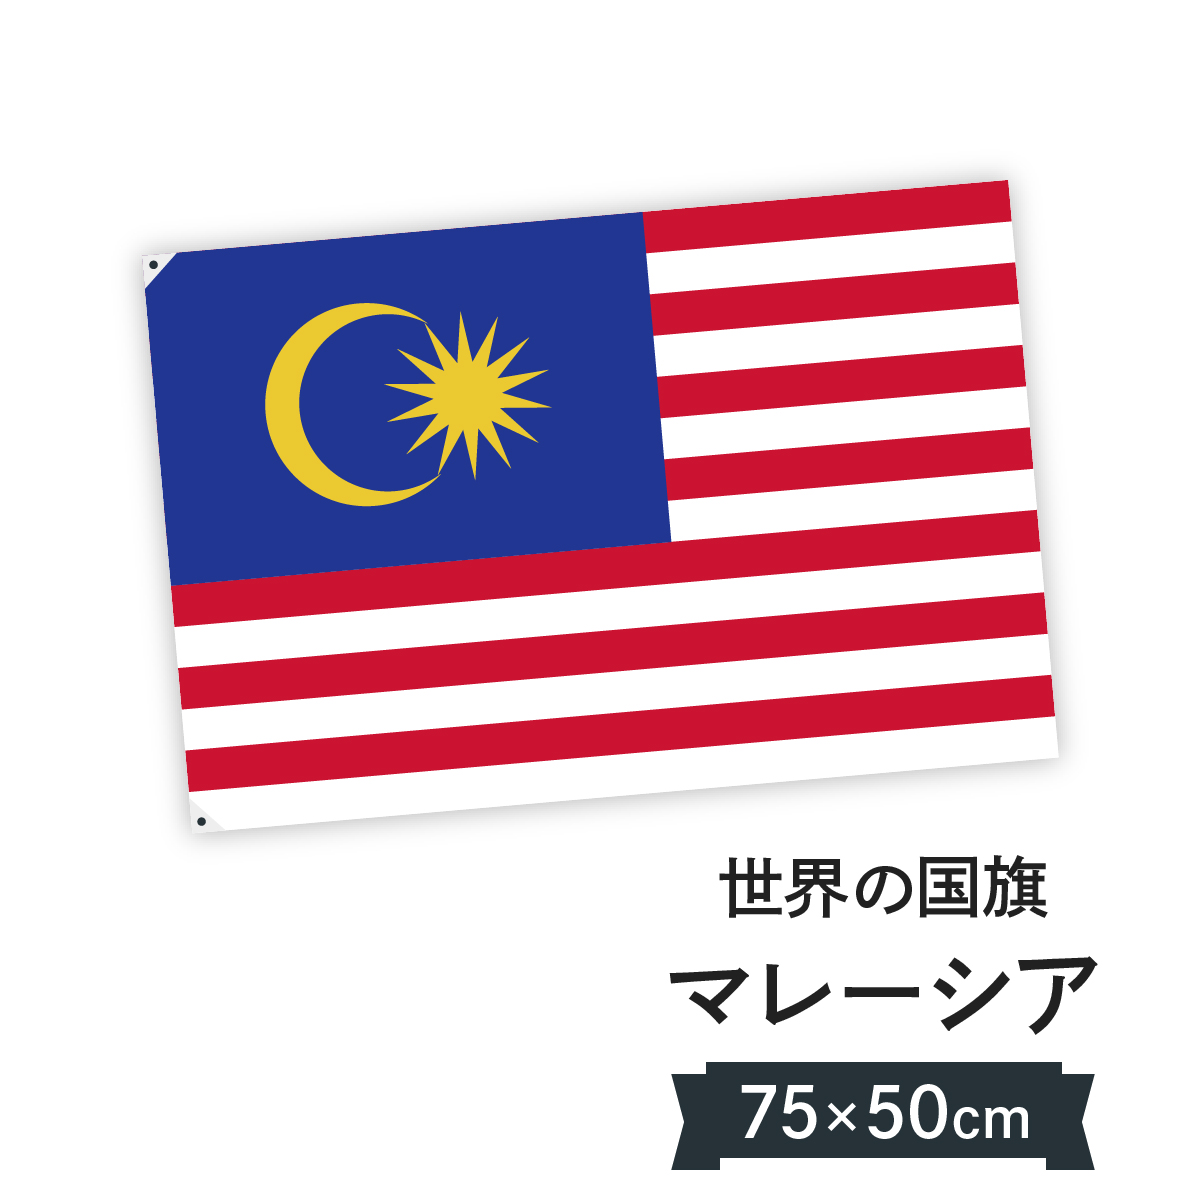 楽天市場 マレーシア 国旗 W75cm H50cm グッズプロ